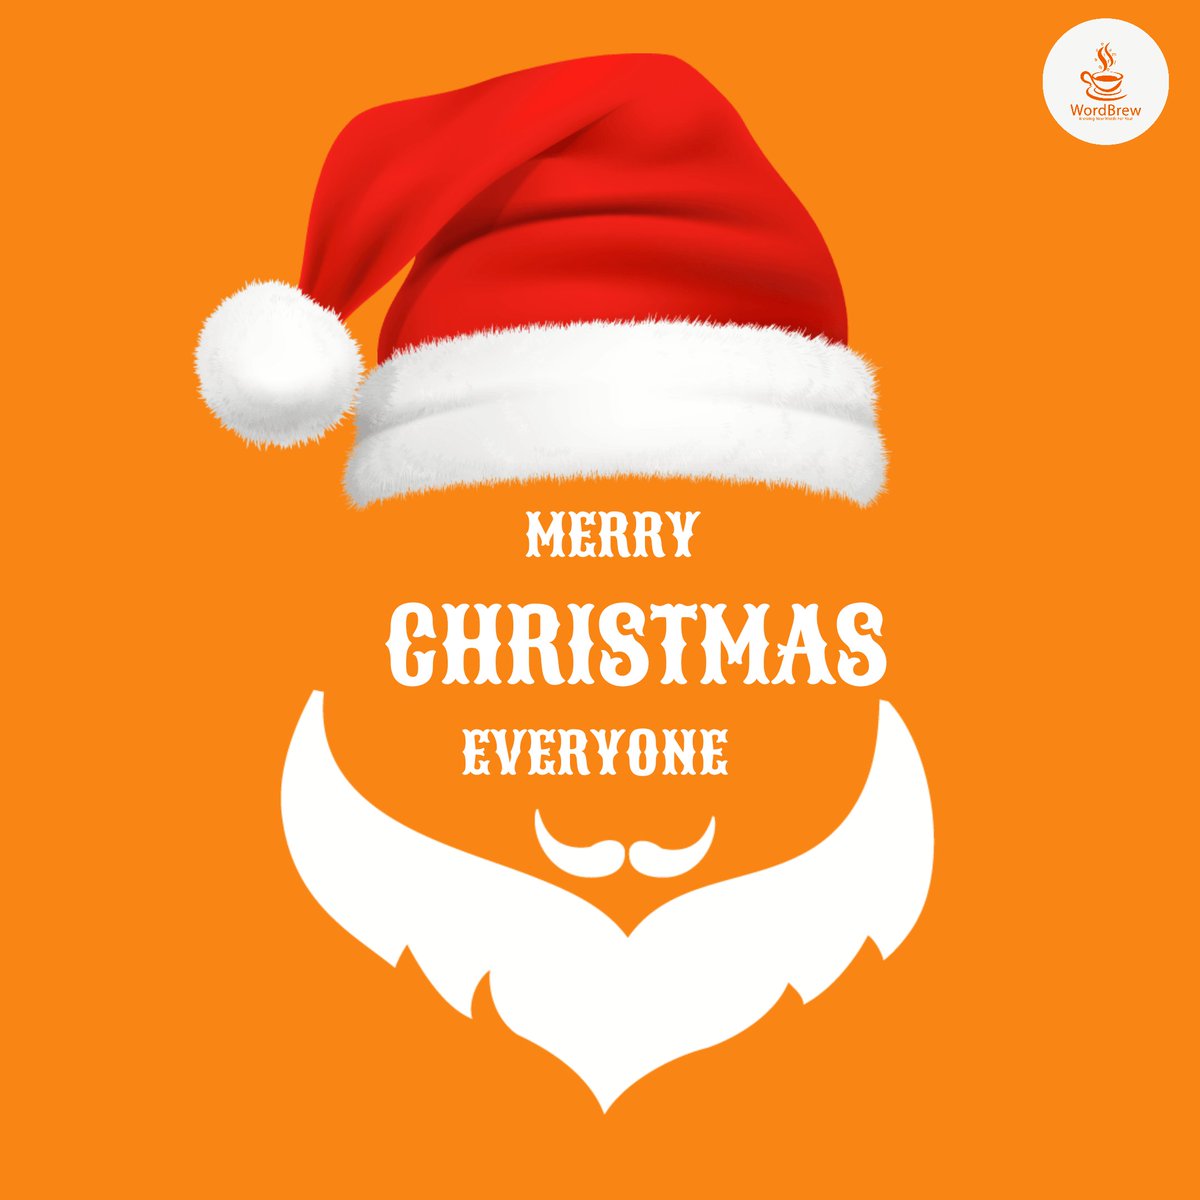 Merry Christmas 🎄☃️

#merrychristmas #merrychristmas🎄 #christmas #christmastree #christmastime #contentstrategy #digitalmarketingagency #wordbrew_social #wordbrew